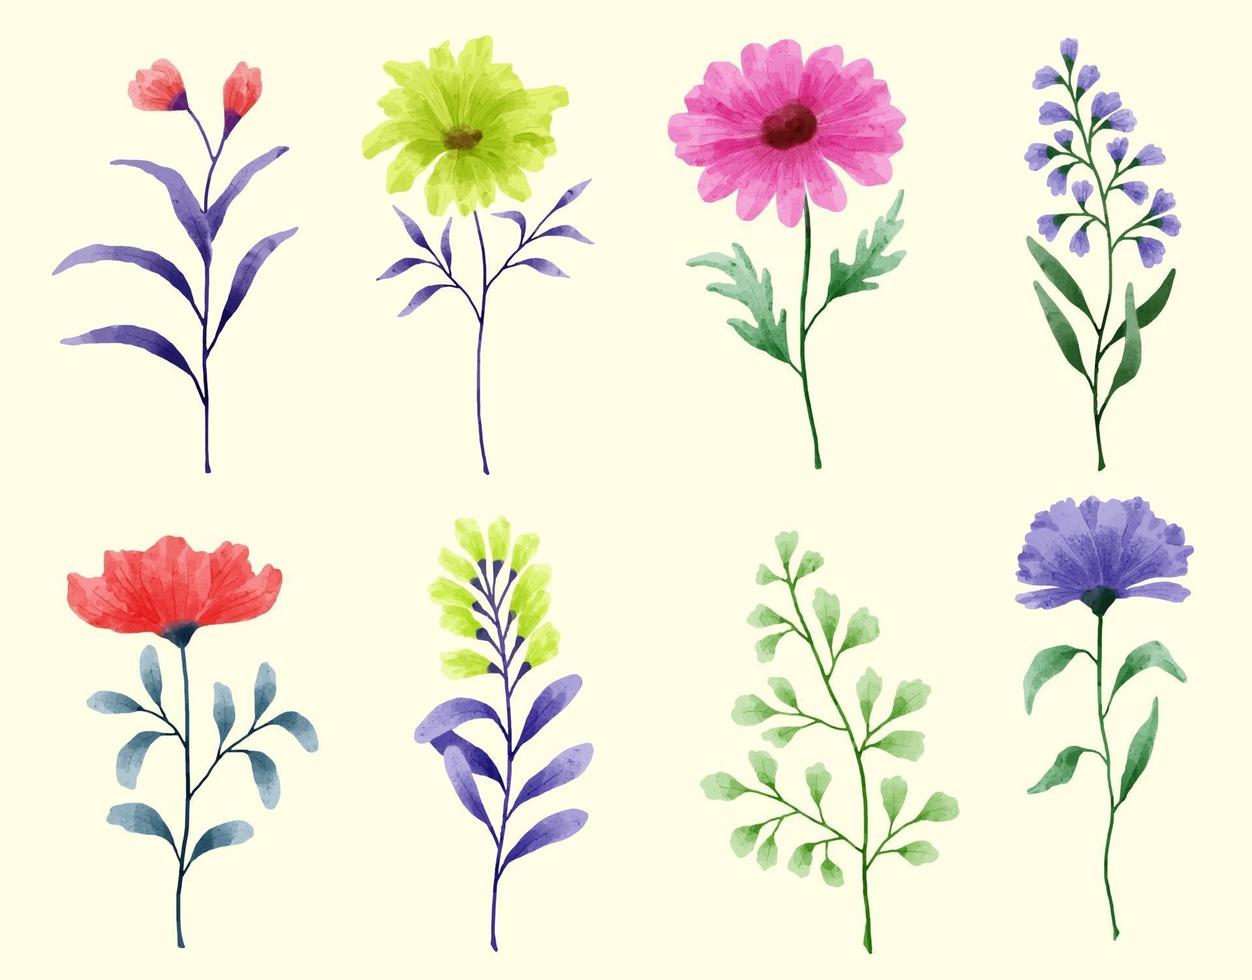 eine Reihe von Blumen in Aquarell für verschiedene Karten und Grußkarten gemalt. vektor